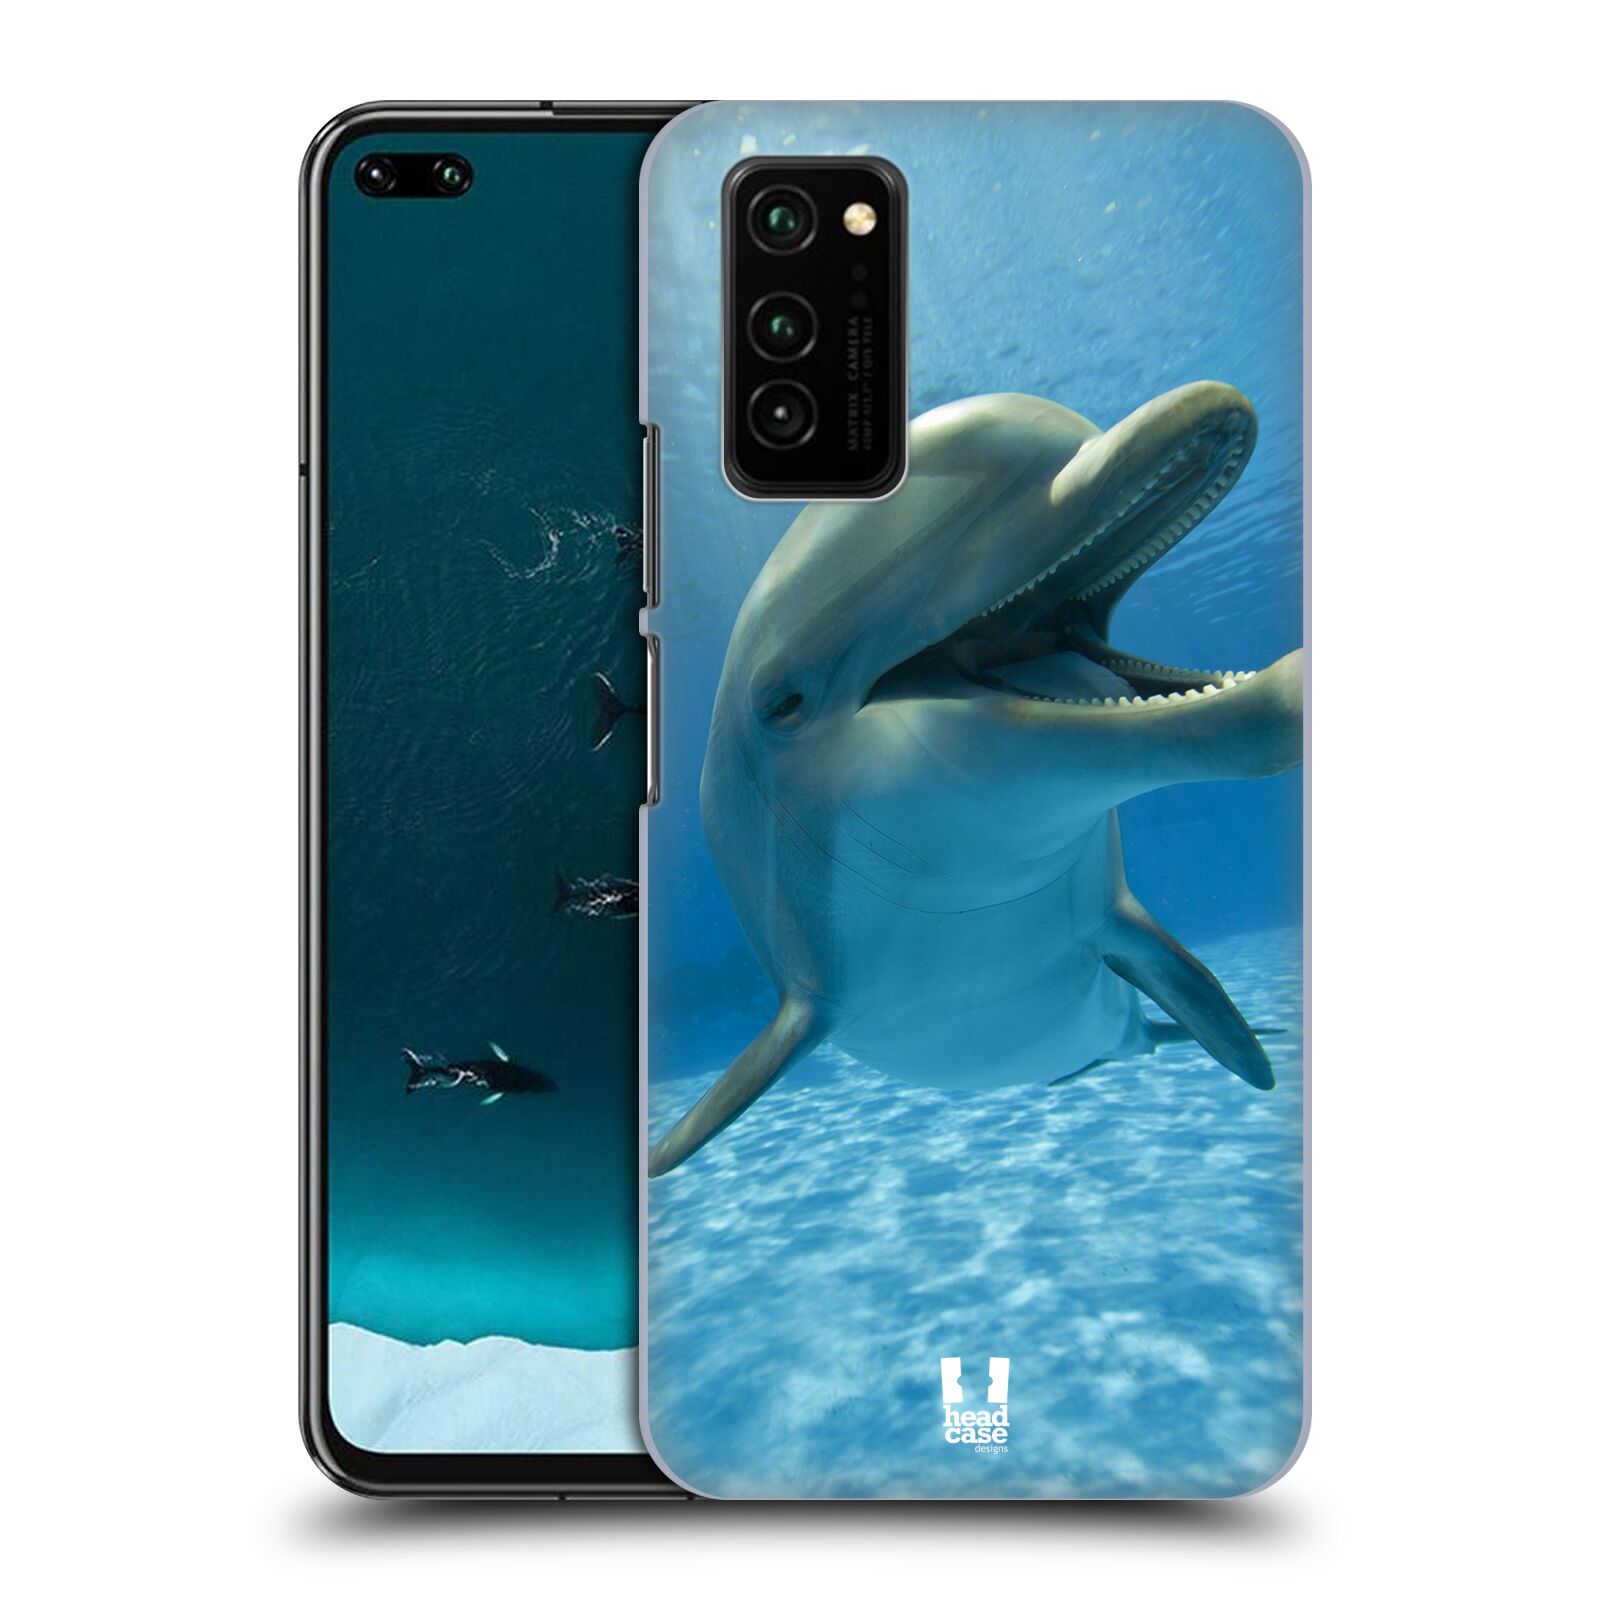 Zadní obal pro mobil Honor View 30 - HEAD CASE - Svět zvířat delfín v moři